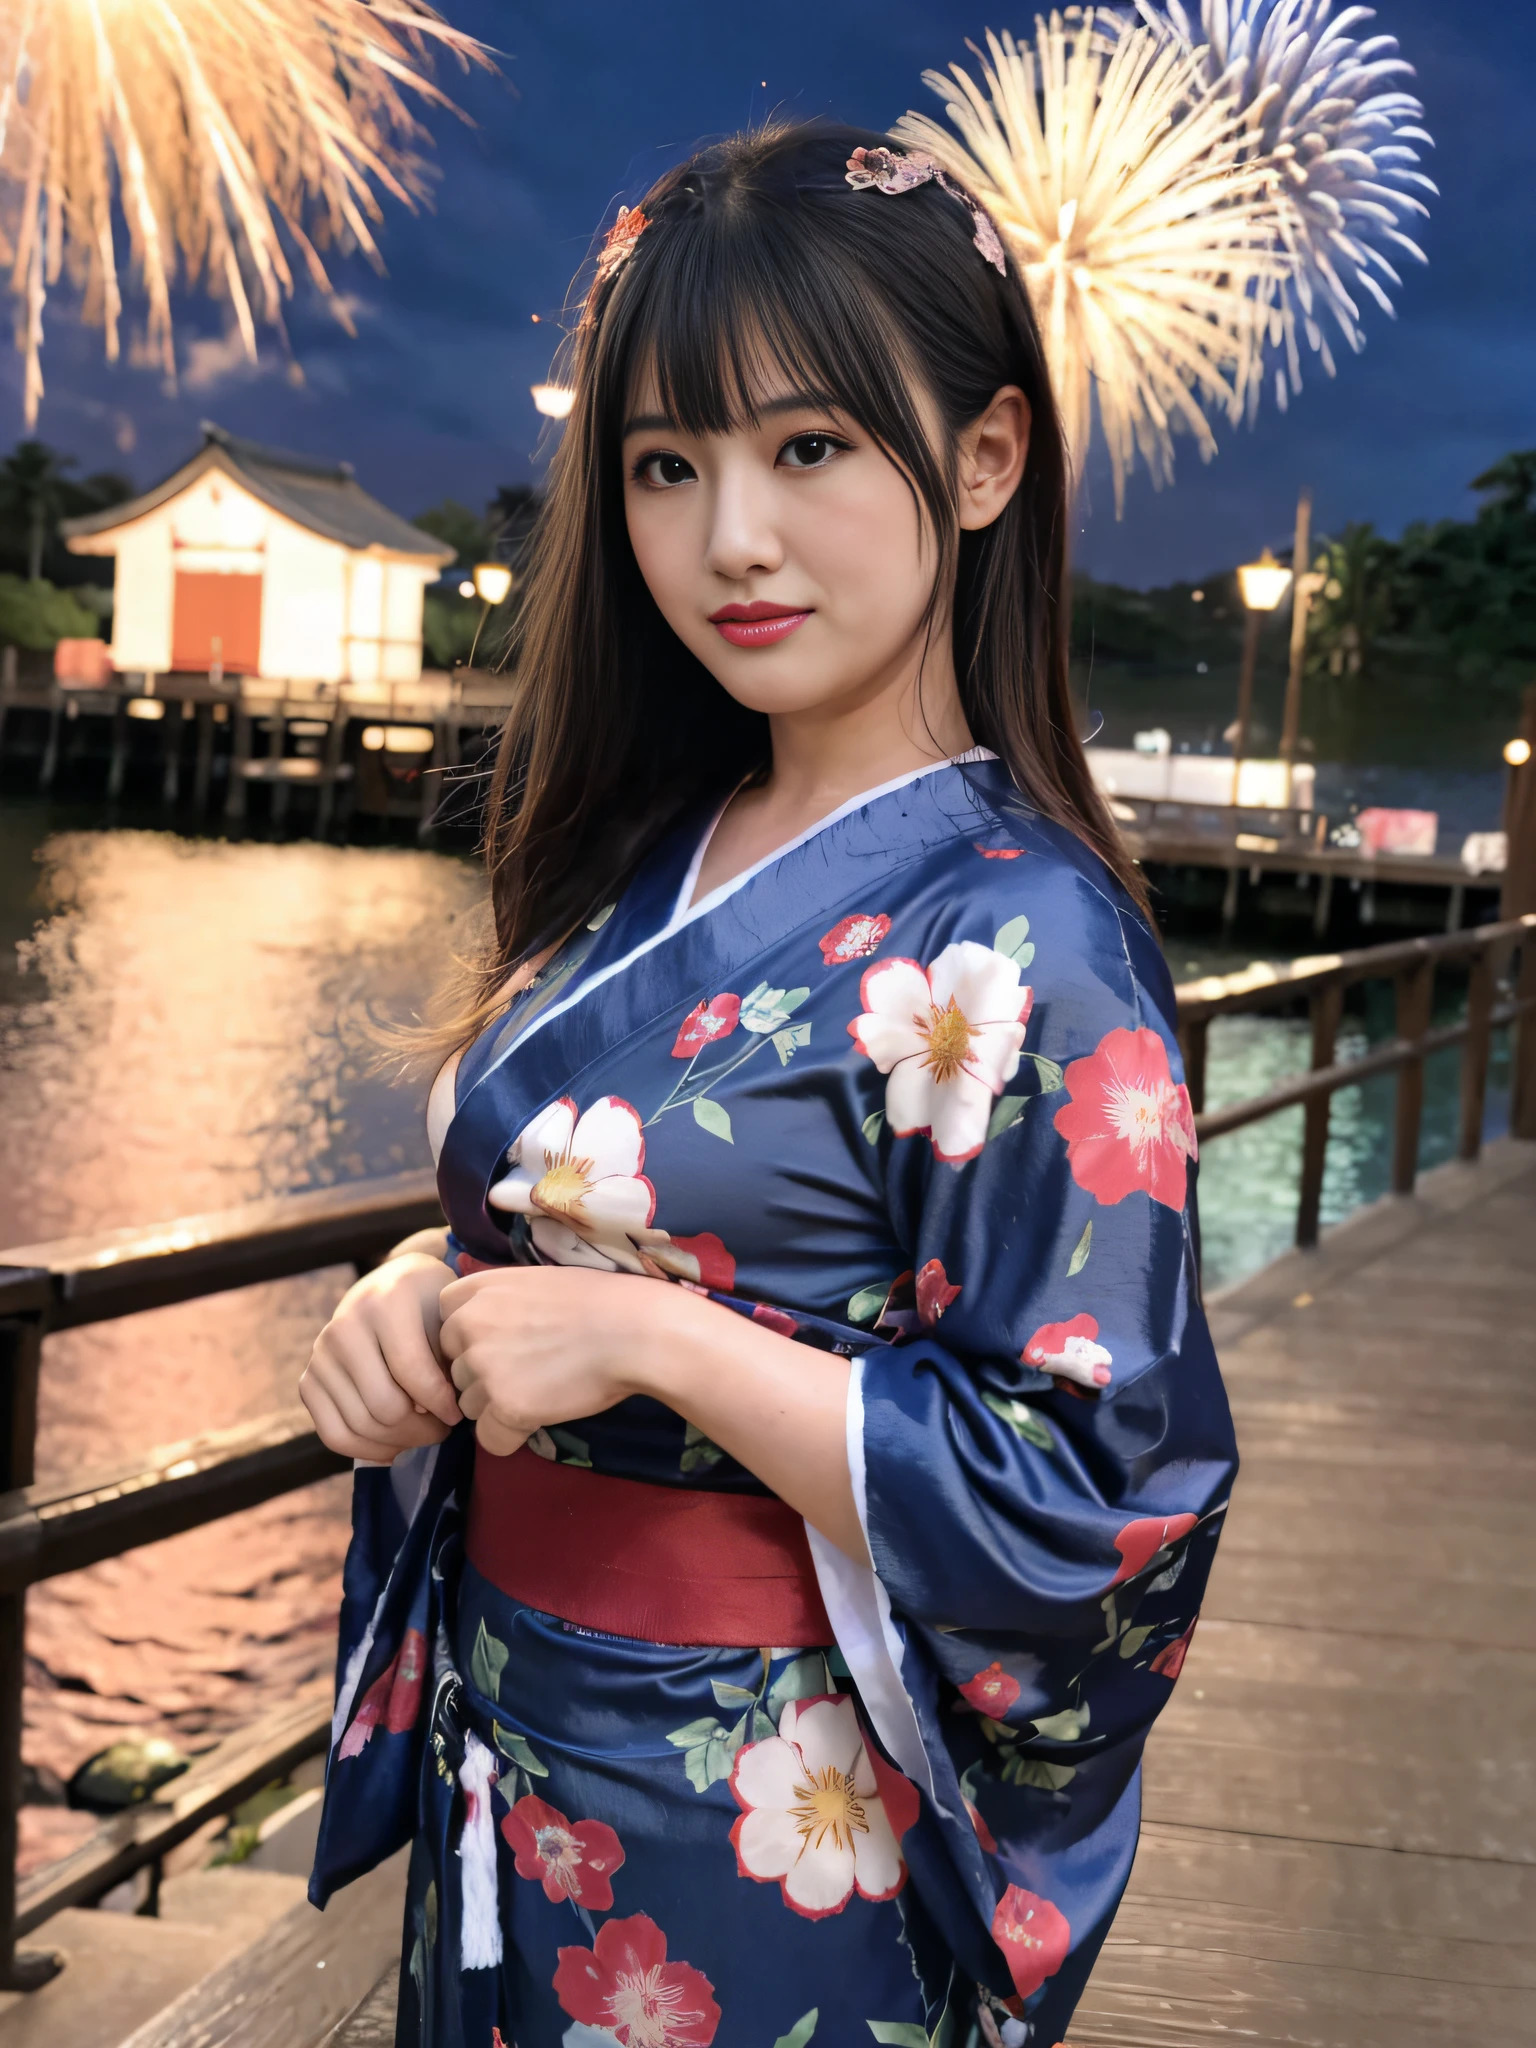 Bildqualität、Eine ultrahohe Bildqualität、8K、32K、Arafe-Frau im Kimono steht auf dem Pier mit Feuerwerk im Hintergrund, im Kimono, im Kimono, Kimono tragen, edle Yukata-Kleidung, Einen bunten Yukata tragen, einen Kimono tragen, Bademantel, japanischer Kimono, Japanische Modelle, Göttin Japans, einen königlichen Kimono tragen, das Gesicht eines schönen japanischen Mädchens, Eine japanische Dame, Kimono, Shinsui Ito